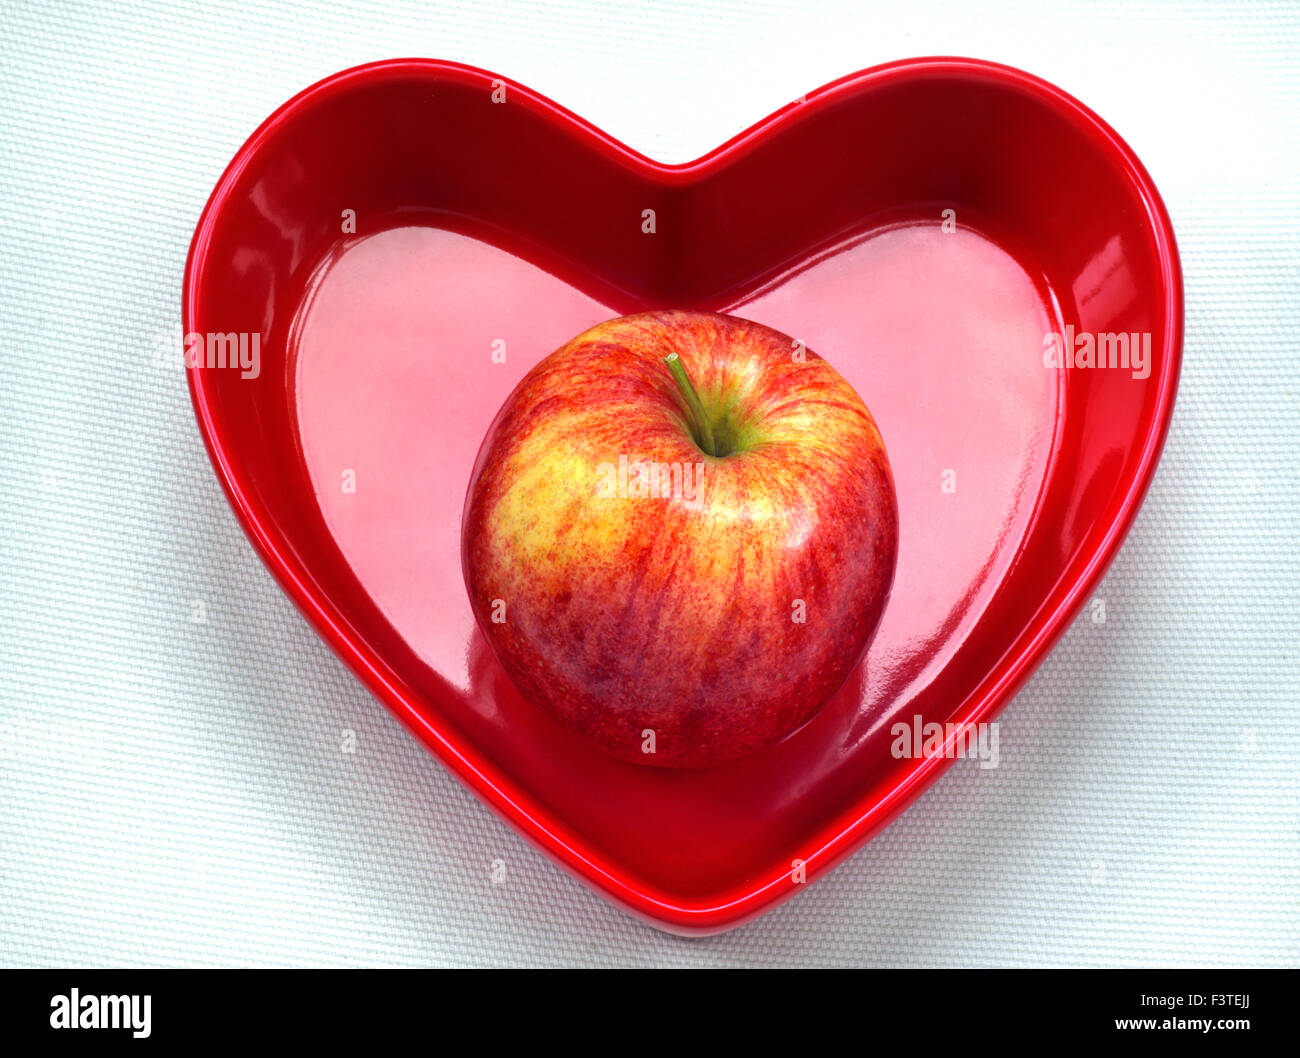 GALA APFEL HERZ TELLER Gesunde Ernährung Konzept / Perfekte unmarkierte glänzend süße Gala Apfel rot Herzform Teller auf weißem Hintergrund Stockfoto